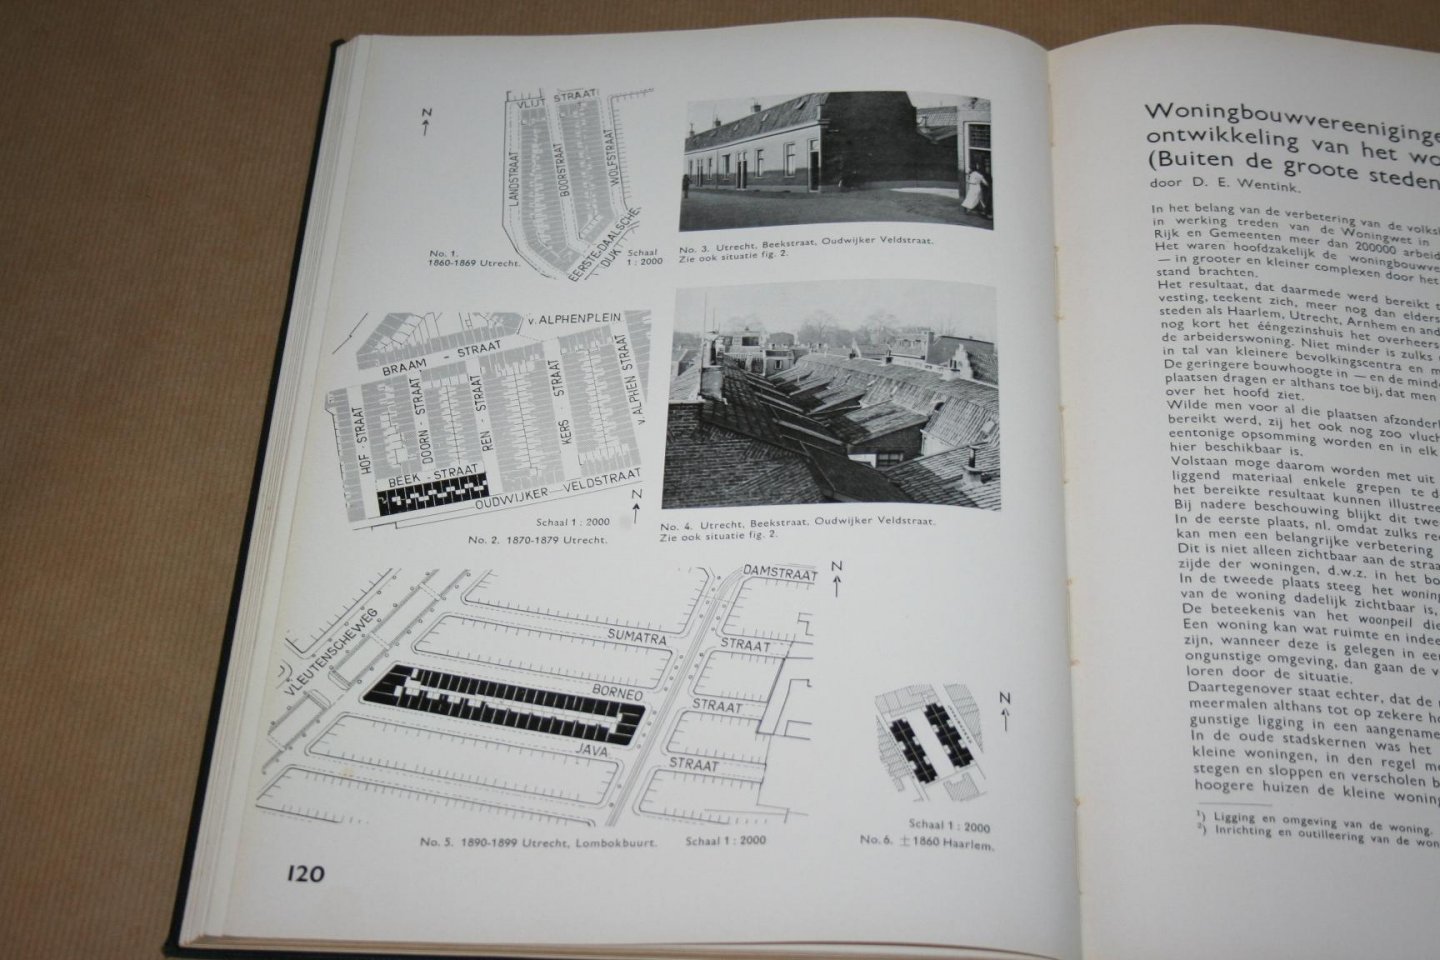 L. van der Wal e.a. - Beter wonen ---  Gedenkboek, gewijd aan het werk der woningbouwvereenigingen in Nederland, uitgegeven ter gelegenheid van het 25-jarig bestaan van den Nationalen Woningraad, Algemeenen Bond van Woningbouwvereenigingen   1913-1938